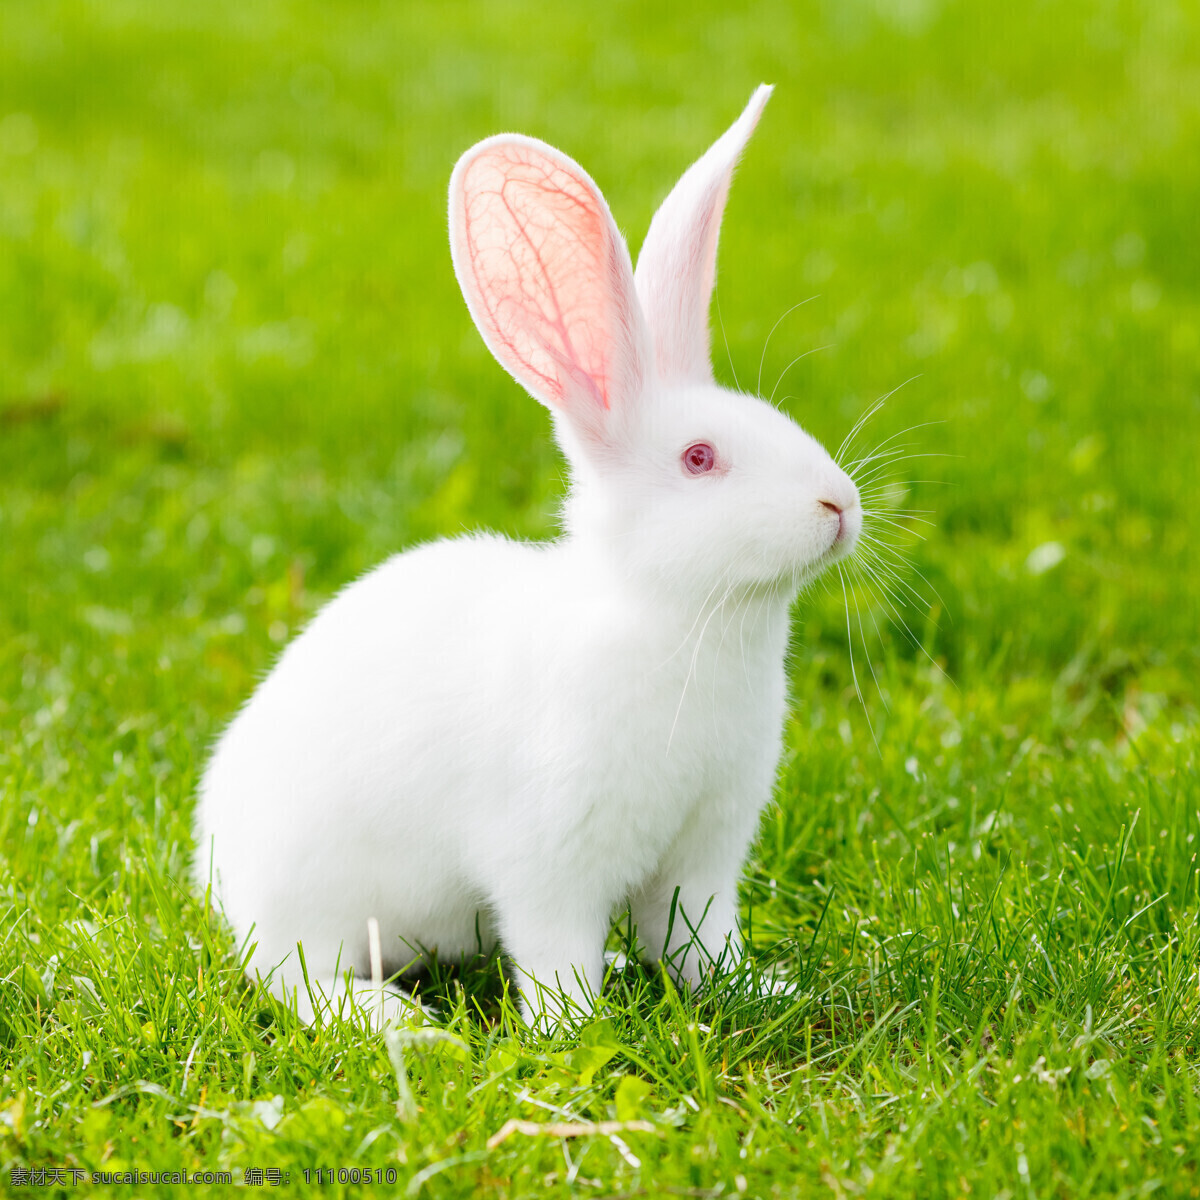 唯美 可爱 动物 兔子 小白兔 宠物 宠物兔子 萌兔 可爱兔子 兔兔 可爱小兔 生物世界 家禽家畜